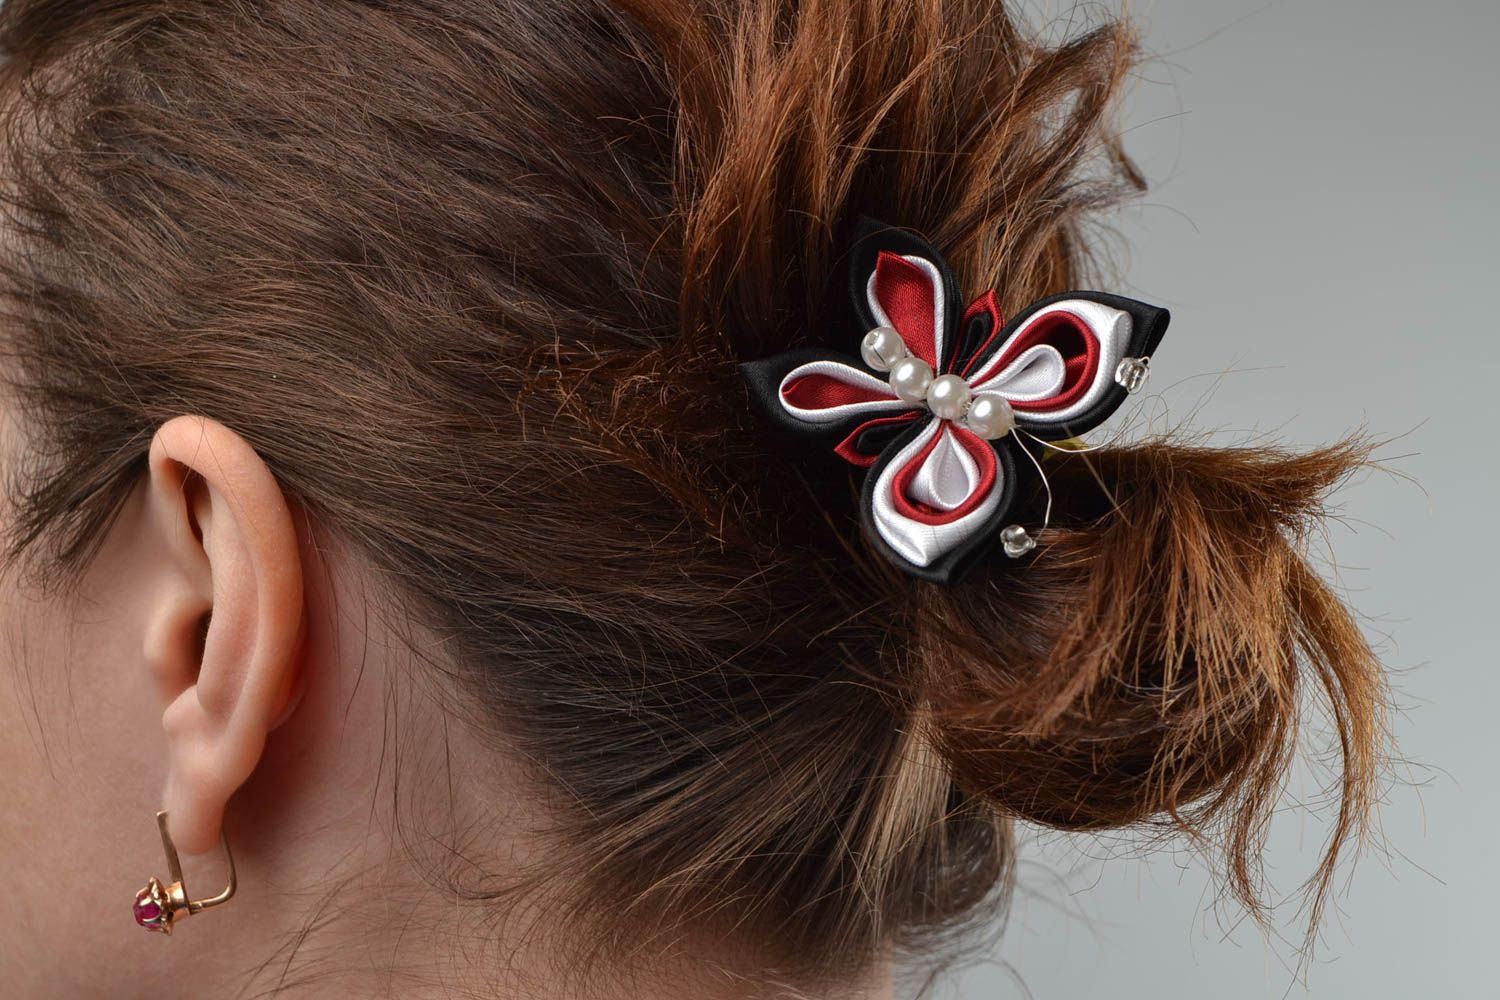 Textil Haarnadel mit Schmetterling aus Atlasbändern handmade Schmuck für Frauen foto 1